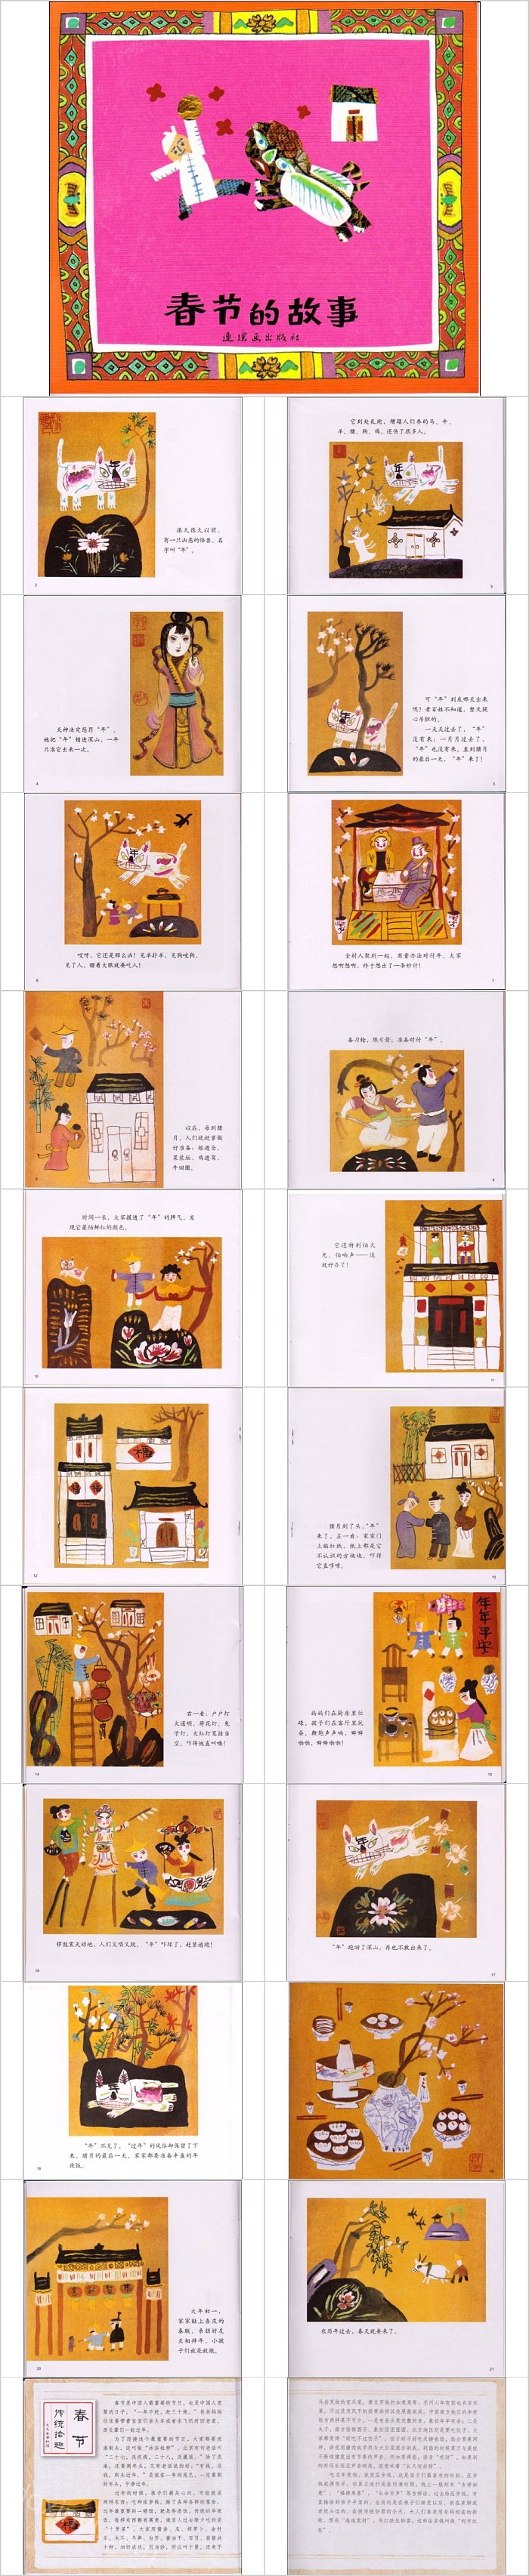 春节的故事幼儿园绘本教育课件